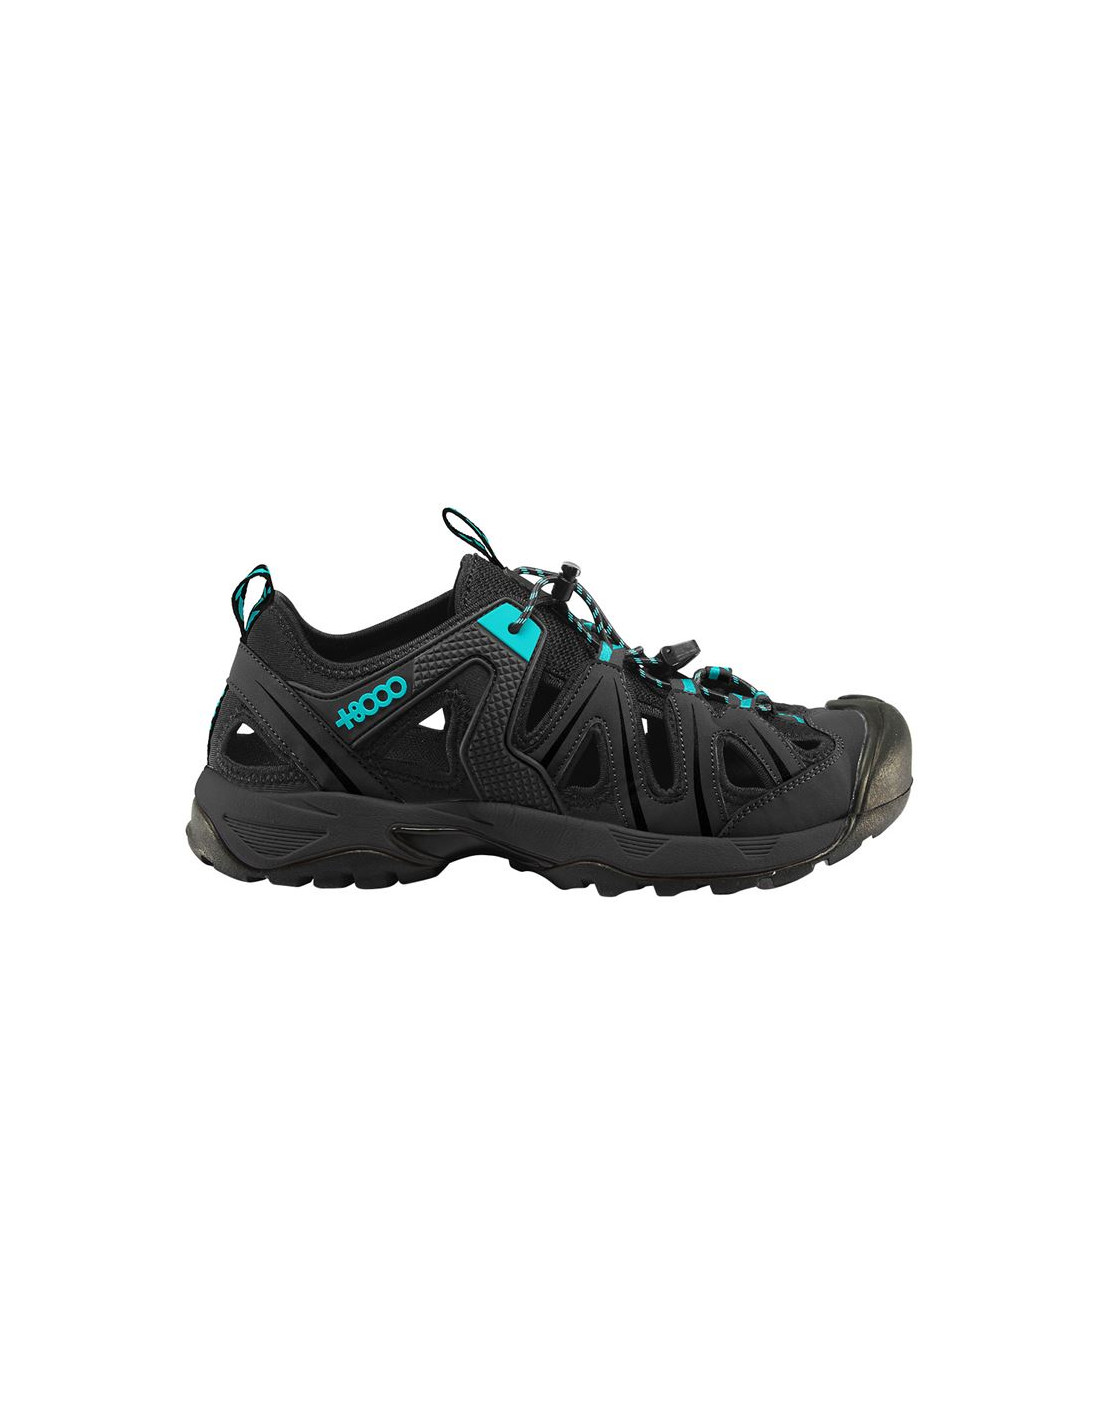 Zapatillas montaña hombre +8000 TOWIN negro – Extreme Factory Sport Caspe